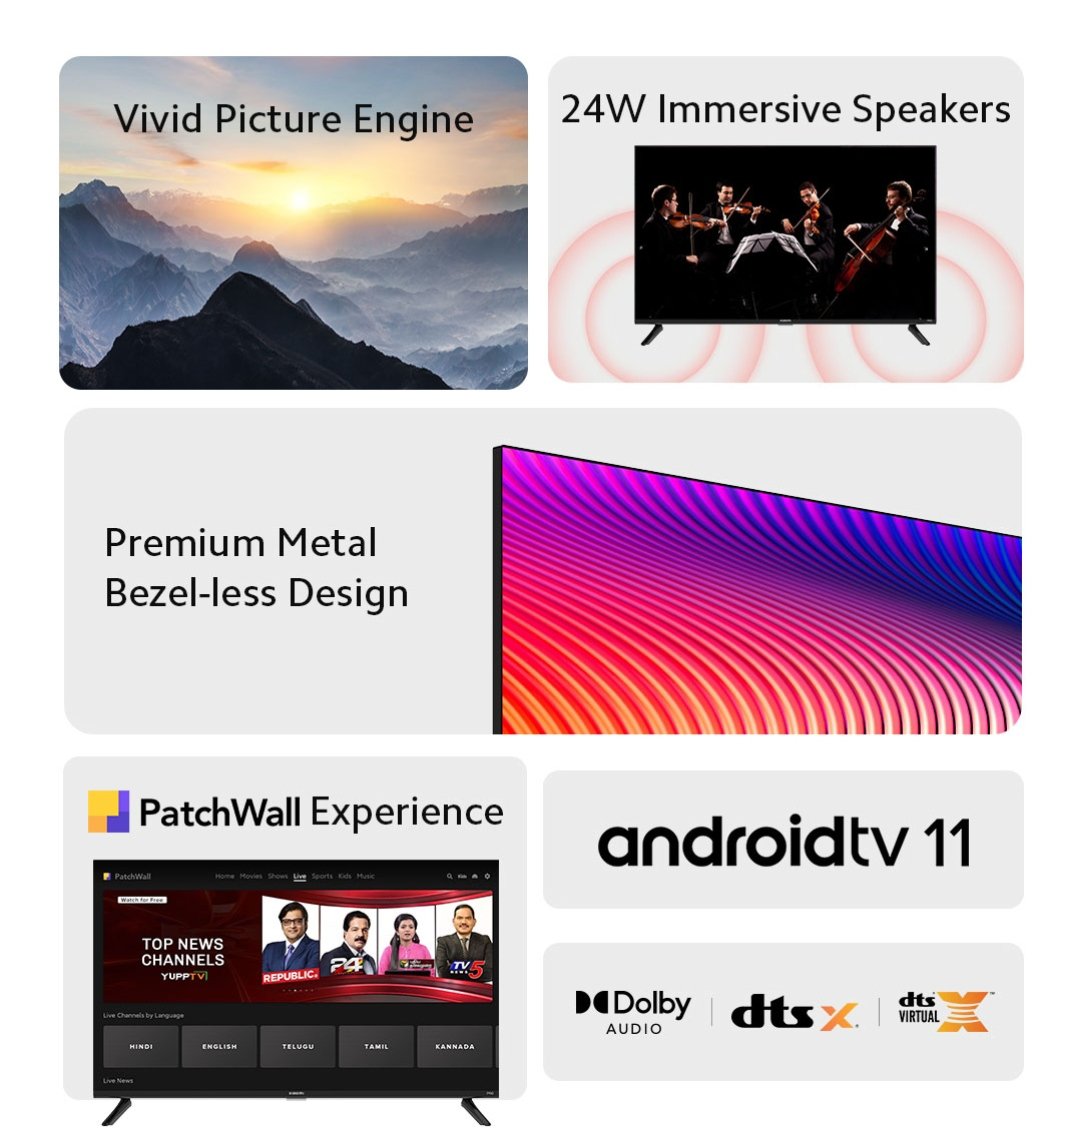 Xiaomi Smart TV 5A Pro